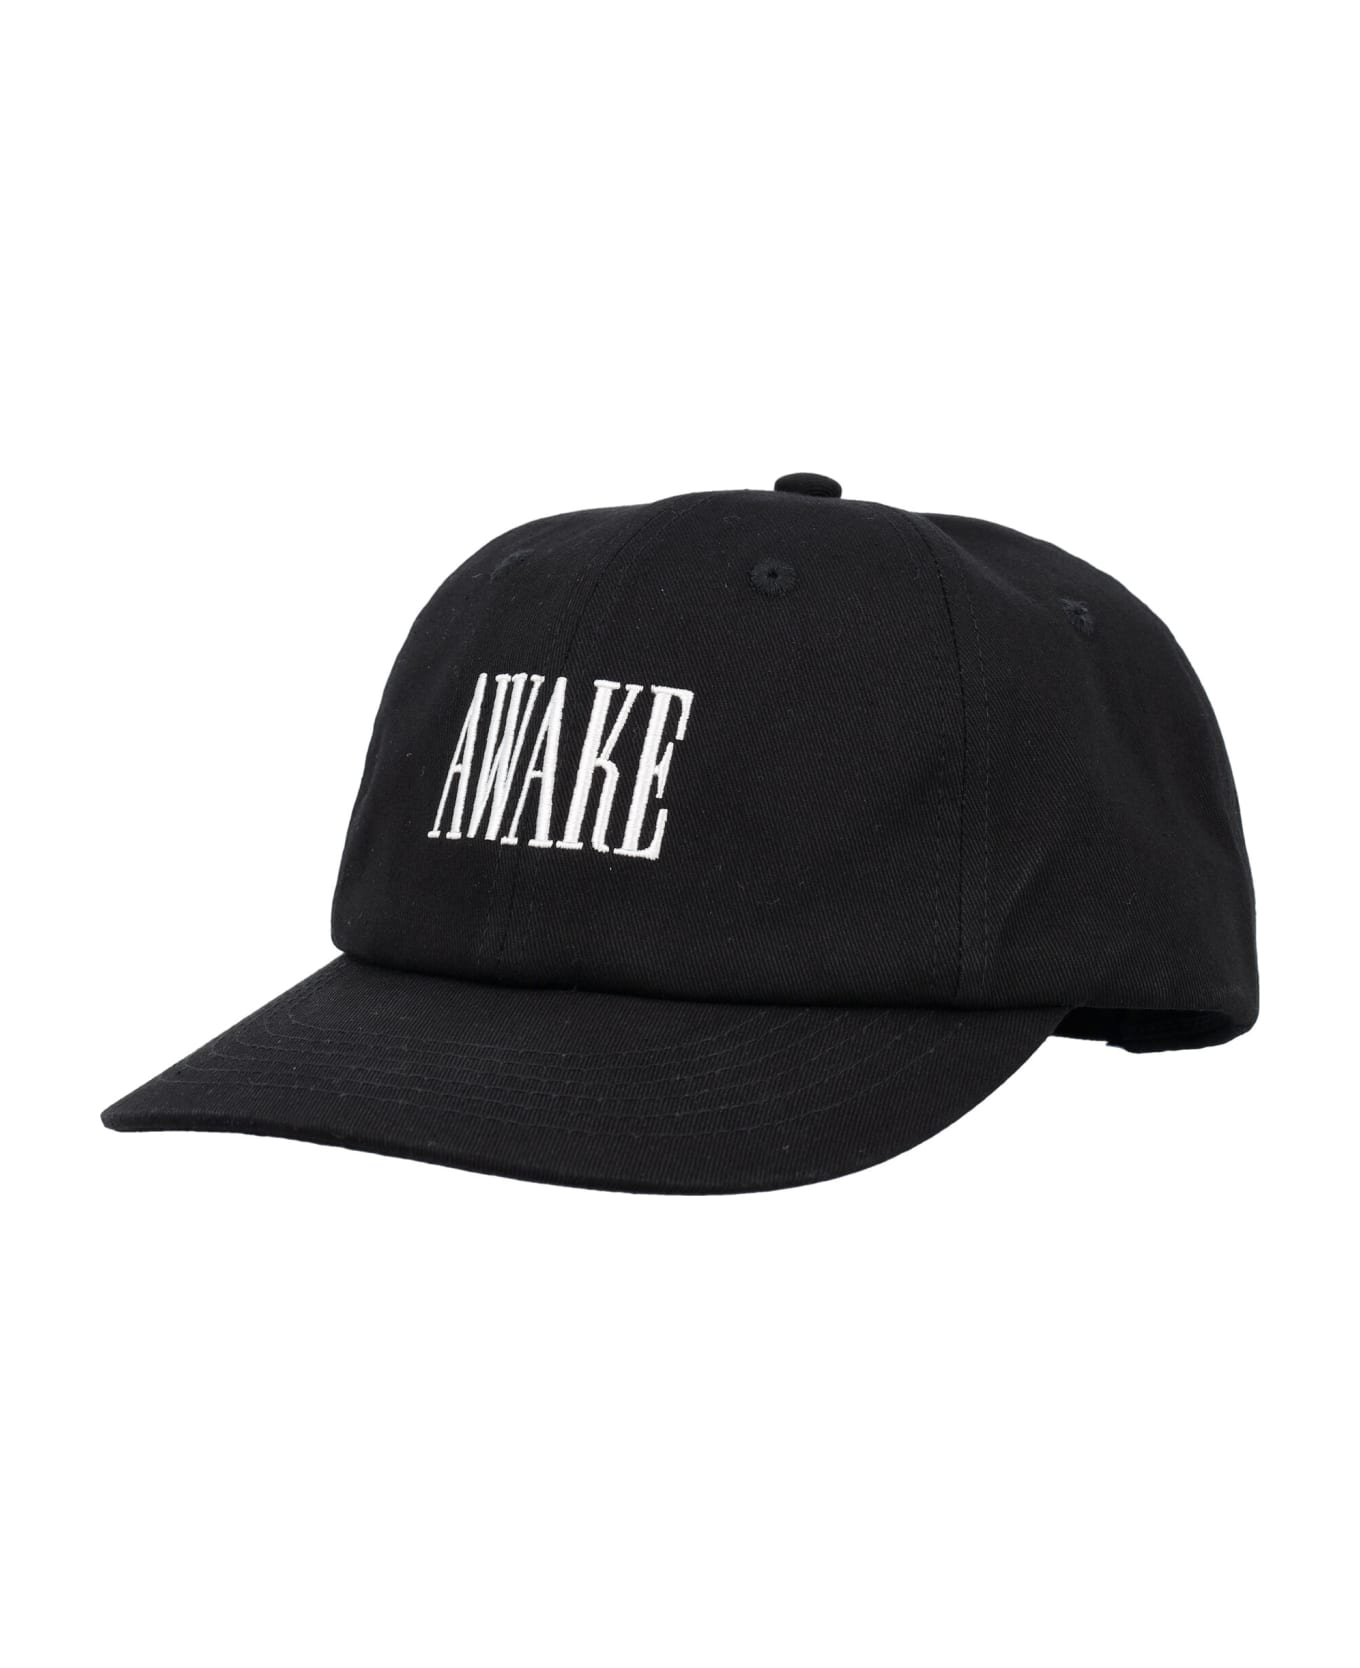 Awake NY Logo Cap - BLACK 帽子